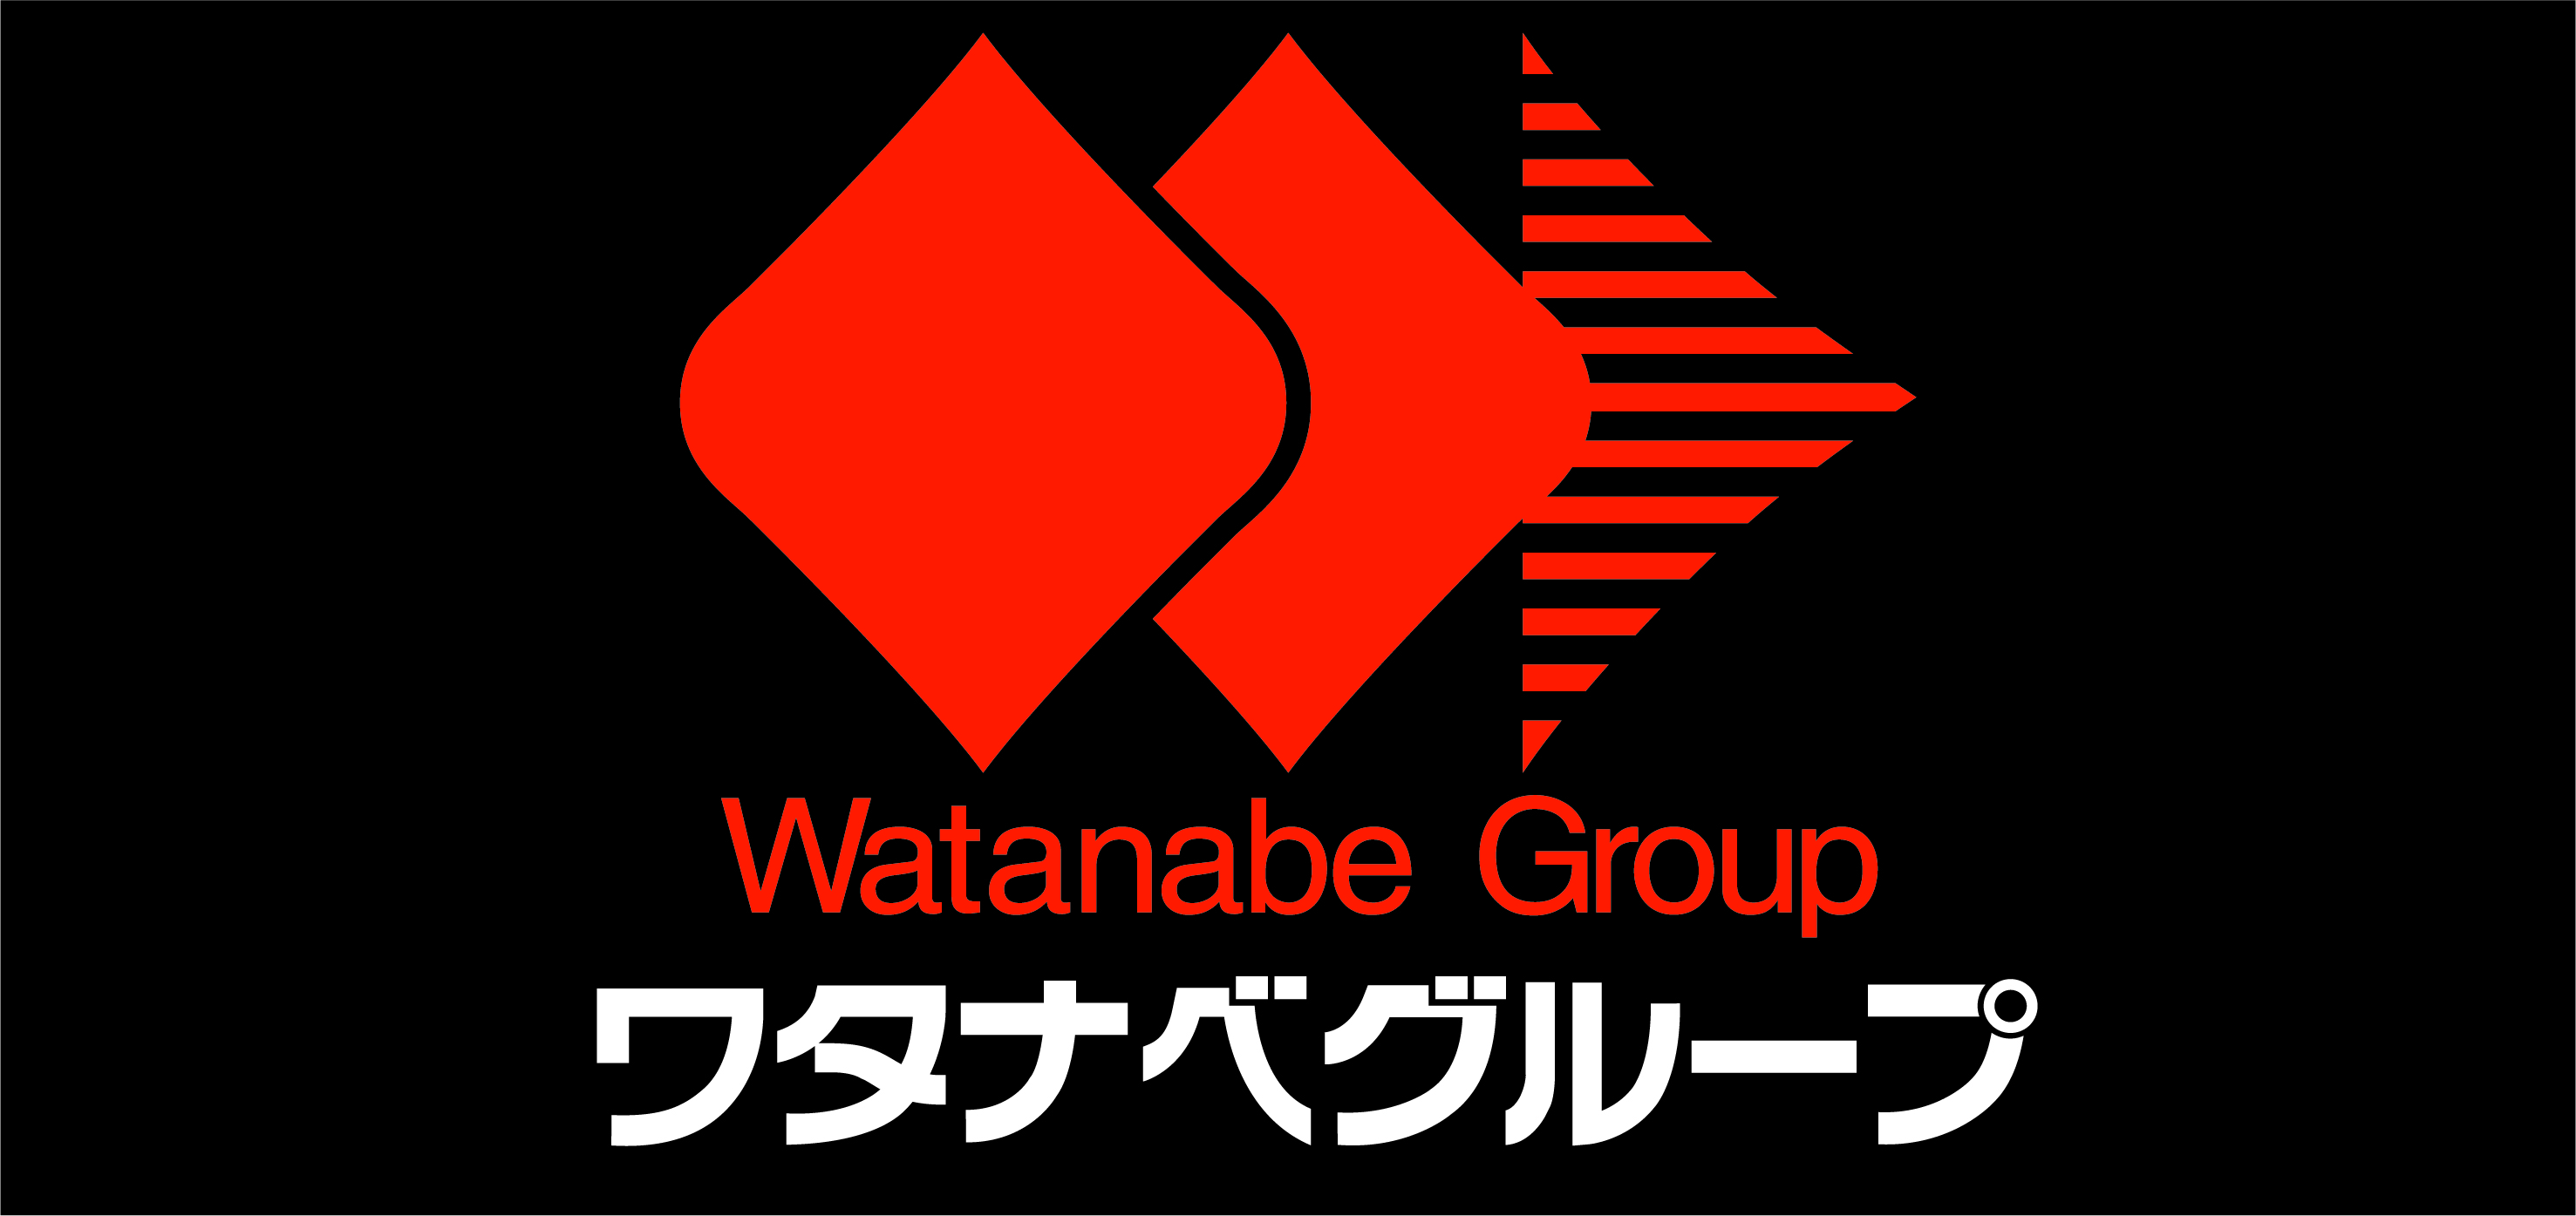 ワタナベグループ